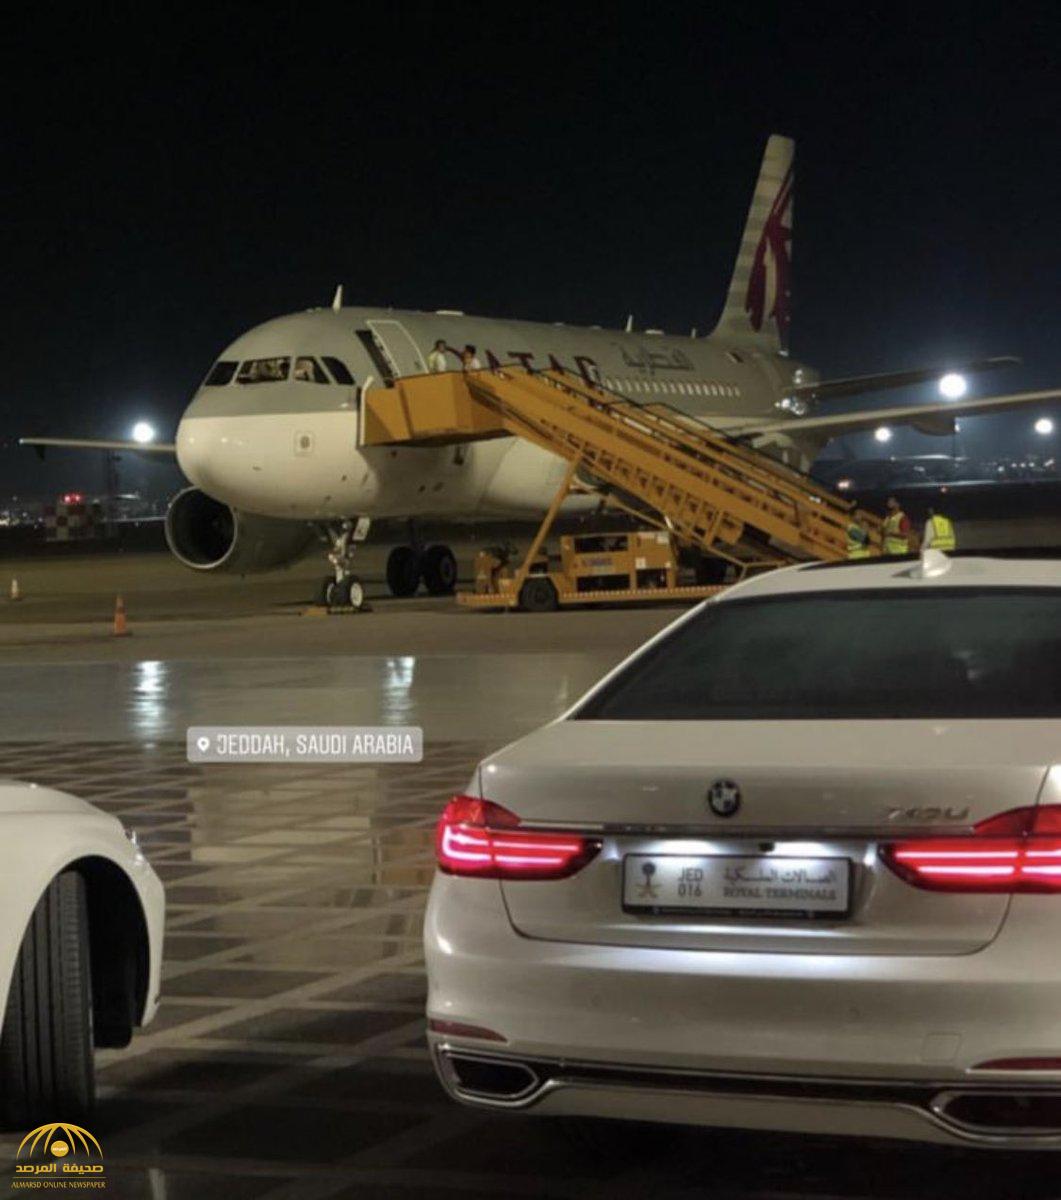 بعد هبوط طائرة أميرية قطرية  في جدة .. كاتب سعودي يكشف عن  فرصة ذهبية  لـ"تميم " لتحقيق الاختراق المطلوب!